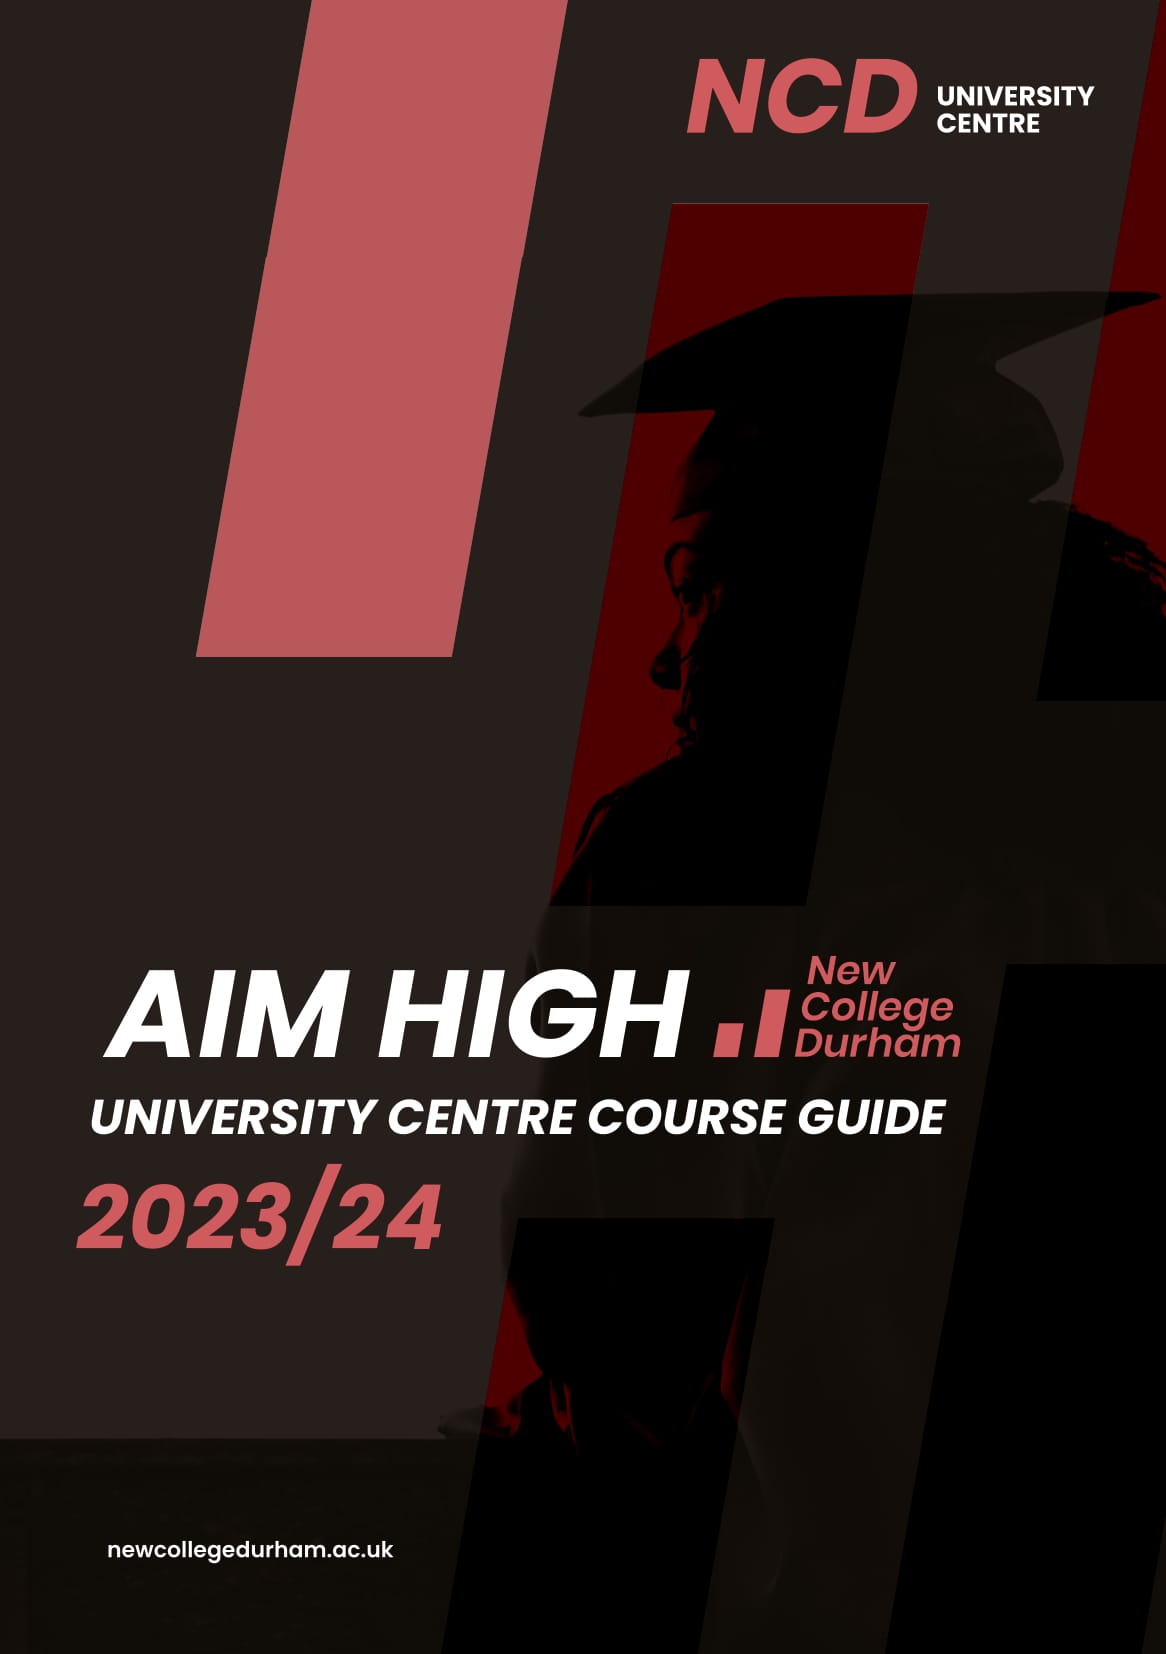 University Centre Course Guide